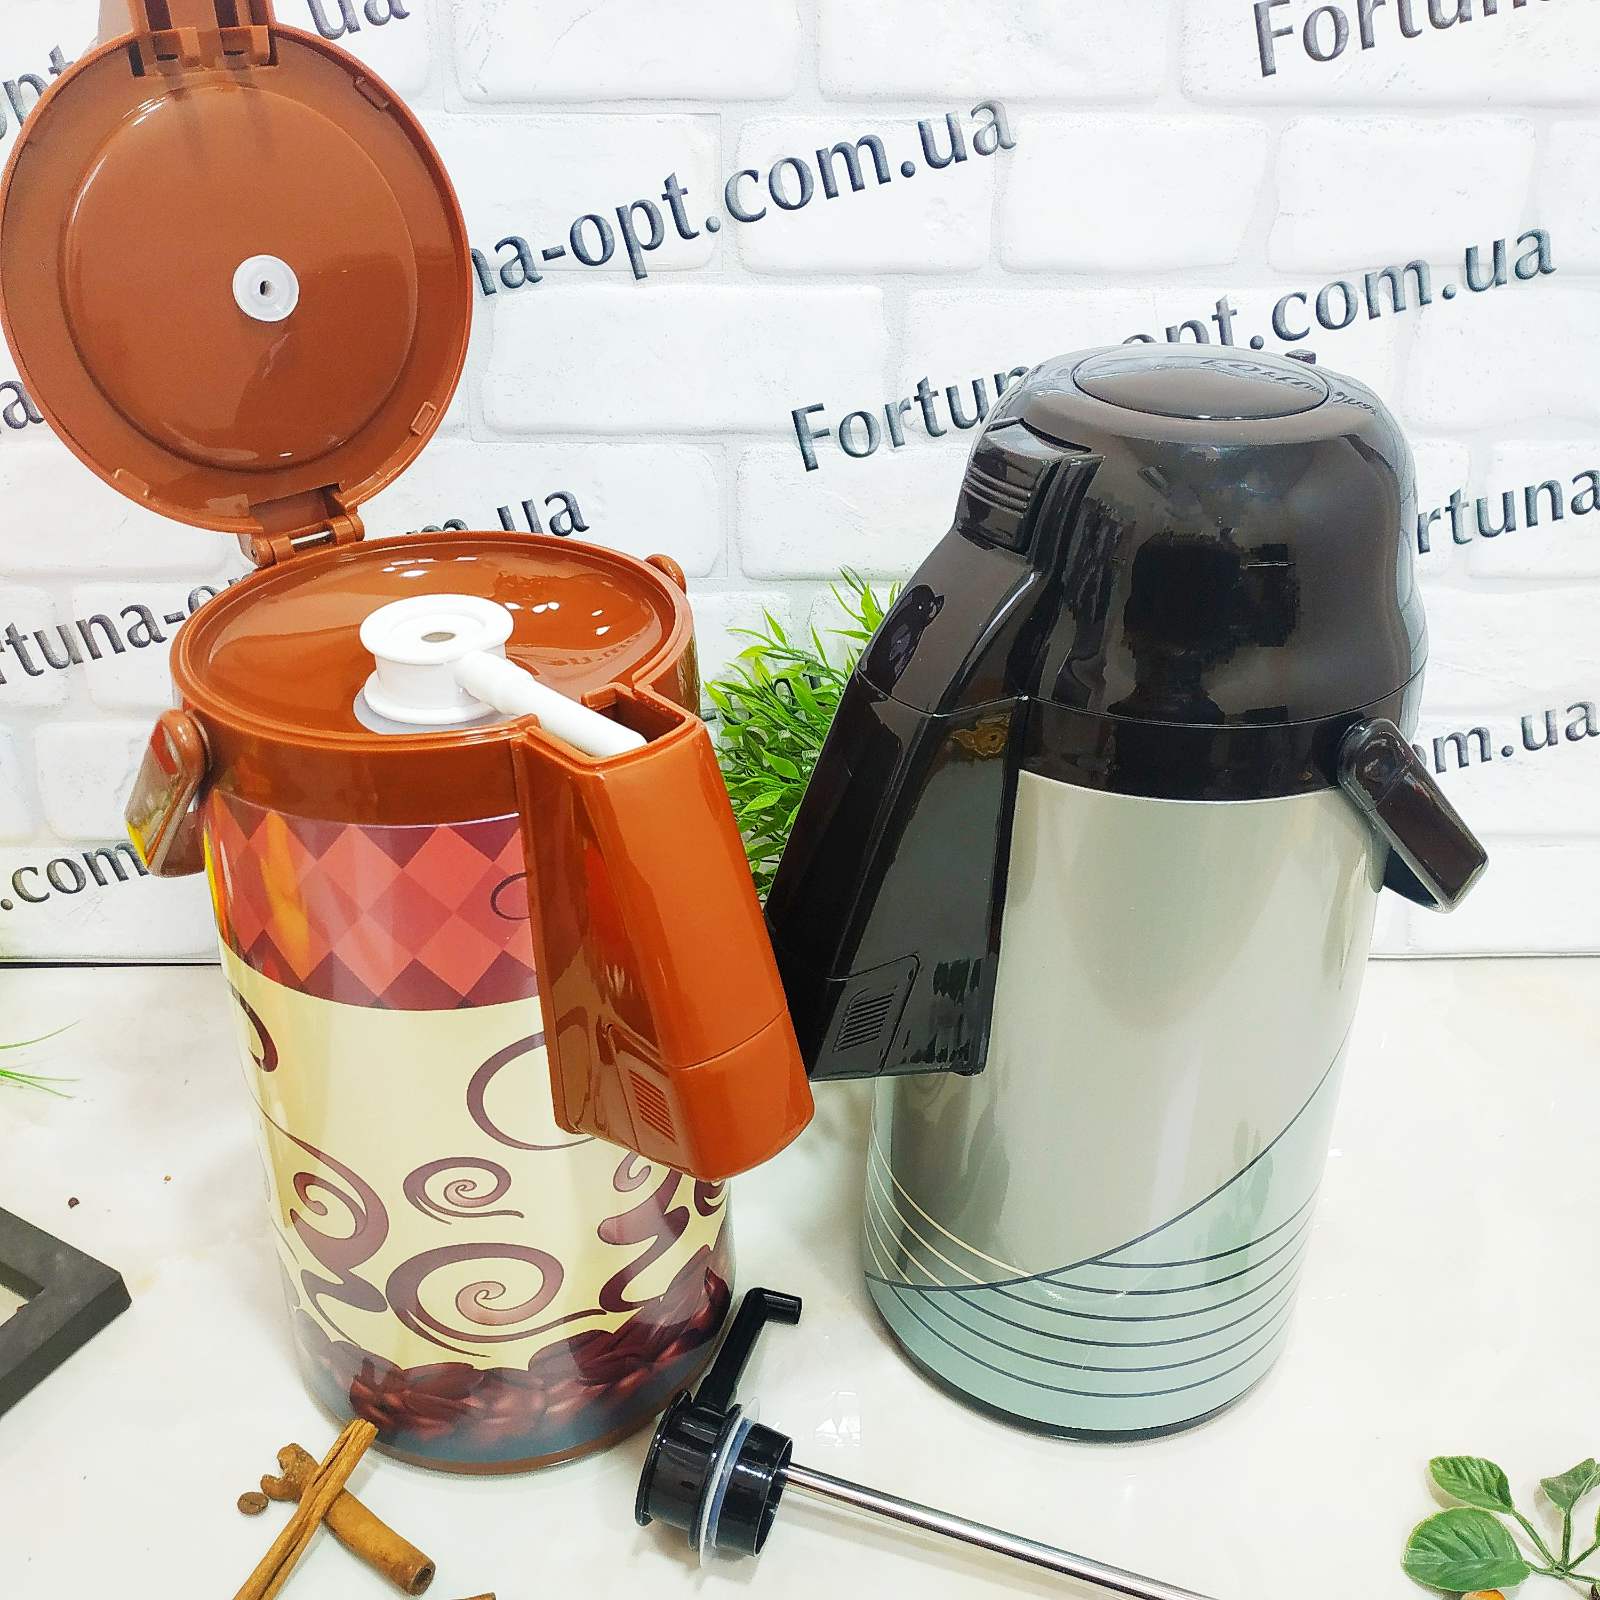 Термос Frico FRU - 265 - 3 л ➜ фото ➜ розн цена $18.86 - Интернет-магазин ✅ Fortuna-opt.com.ua. ✅ 